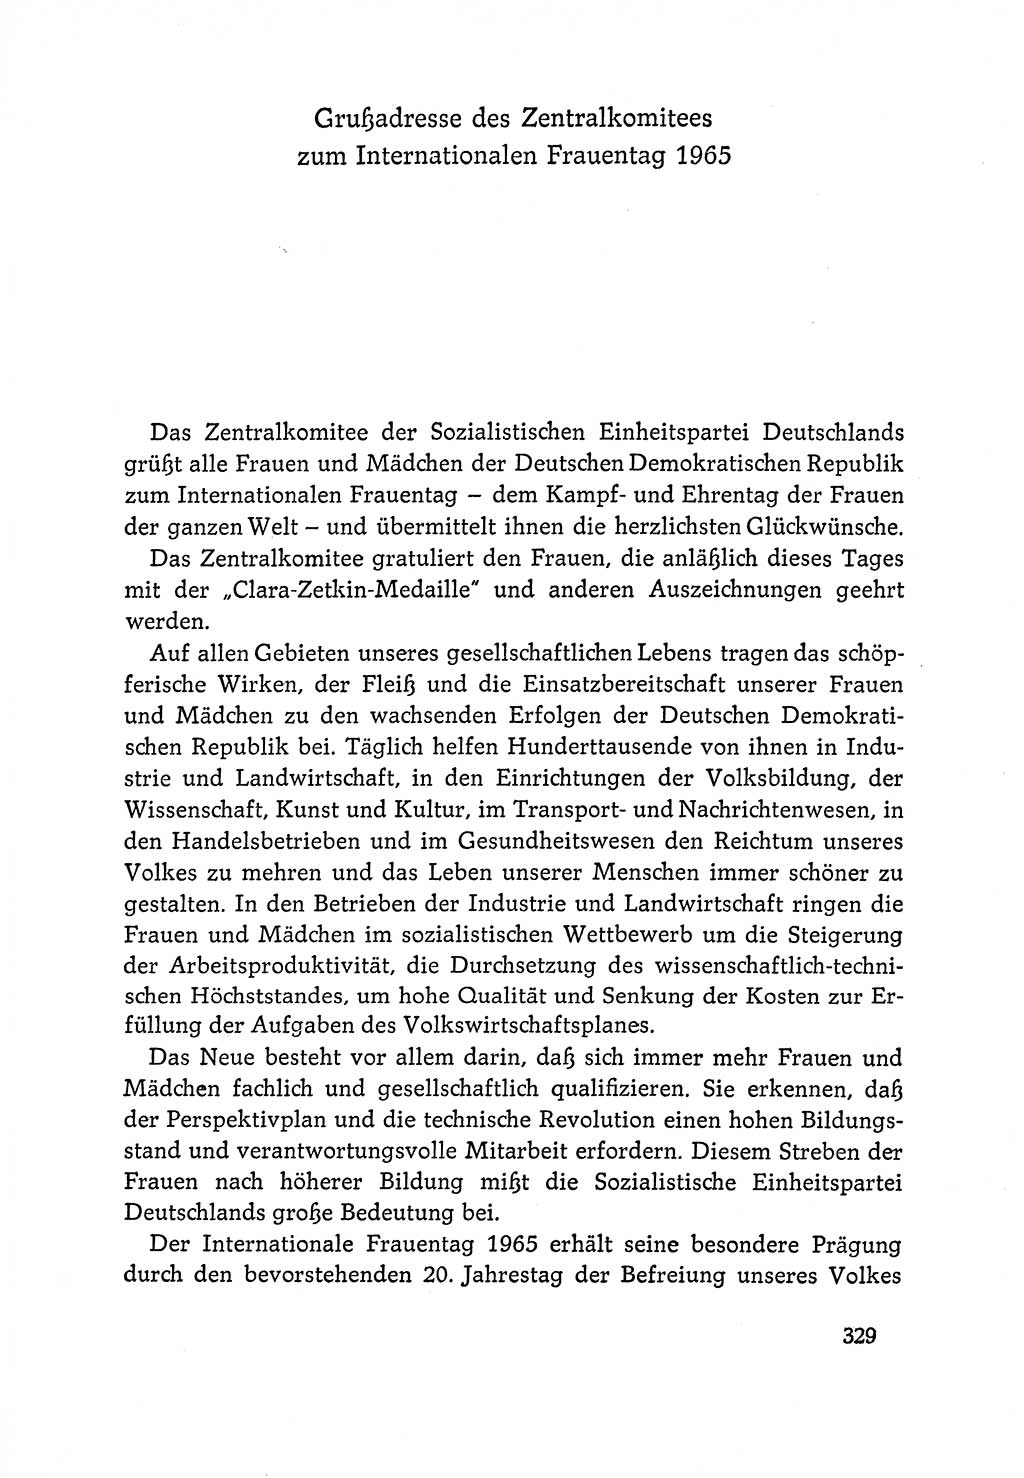 Dokumente der Sozialistischen Einheitspartei Deutschlands (SED) [Deutsche Demokratische Republik (DDR)] 1964-1965, Seite 329 (Dok. SED DDR 1964-1965, S. 329)